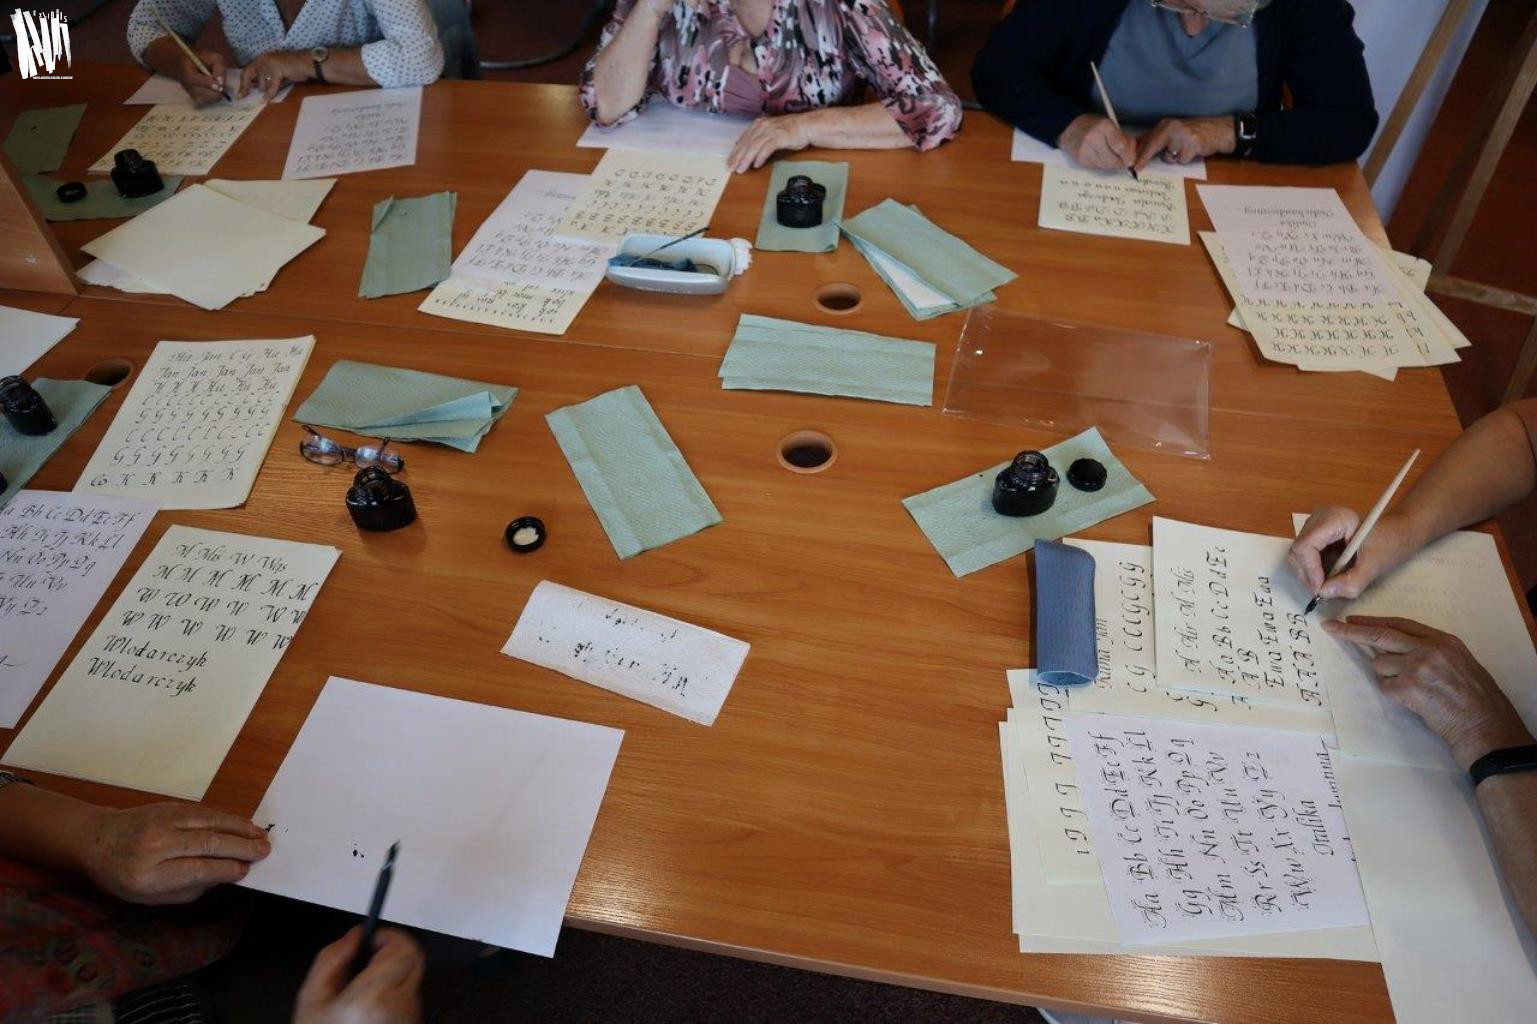 Stół w Czytelni Naukowej zastawiony materiałami do kaligrafii - kałamarzami z atramentem i kartkami papieru do ćwiczeń. Przy stole siedzi pięć osób, każda z nich trzyma w ręce pióro.